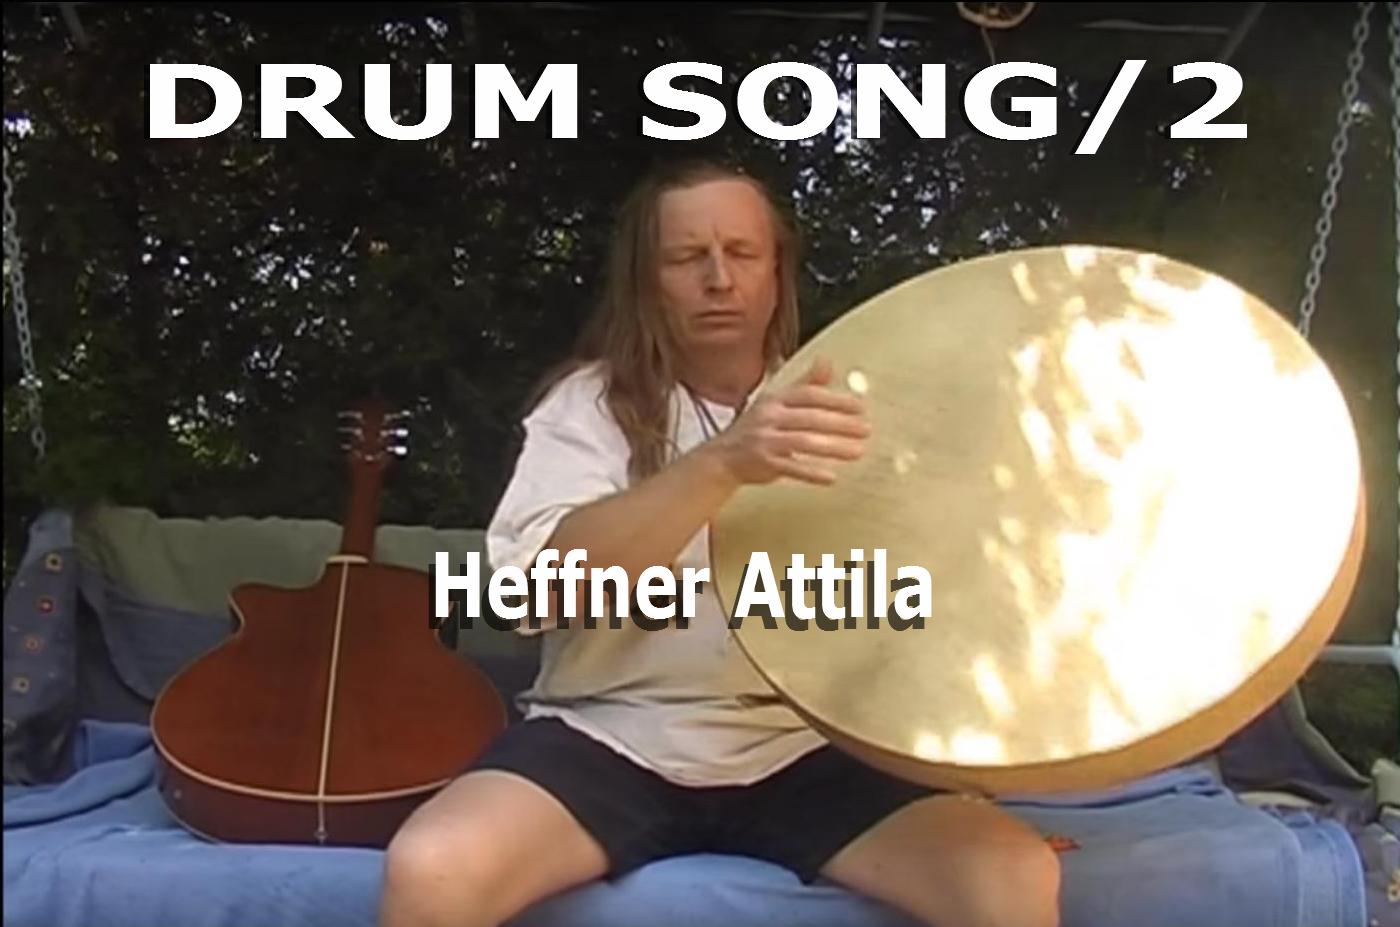 Heffner Attila